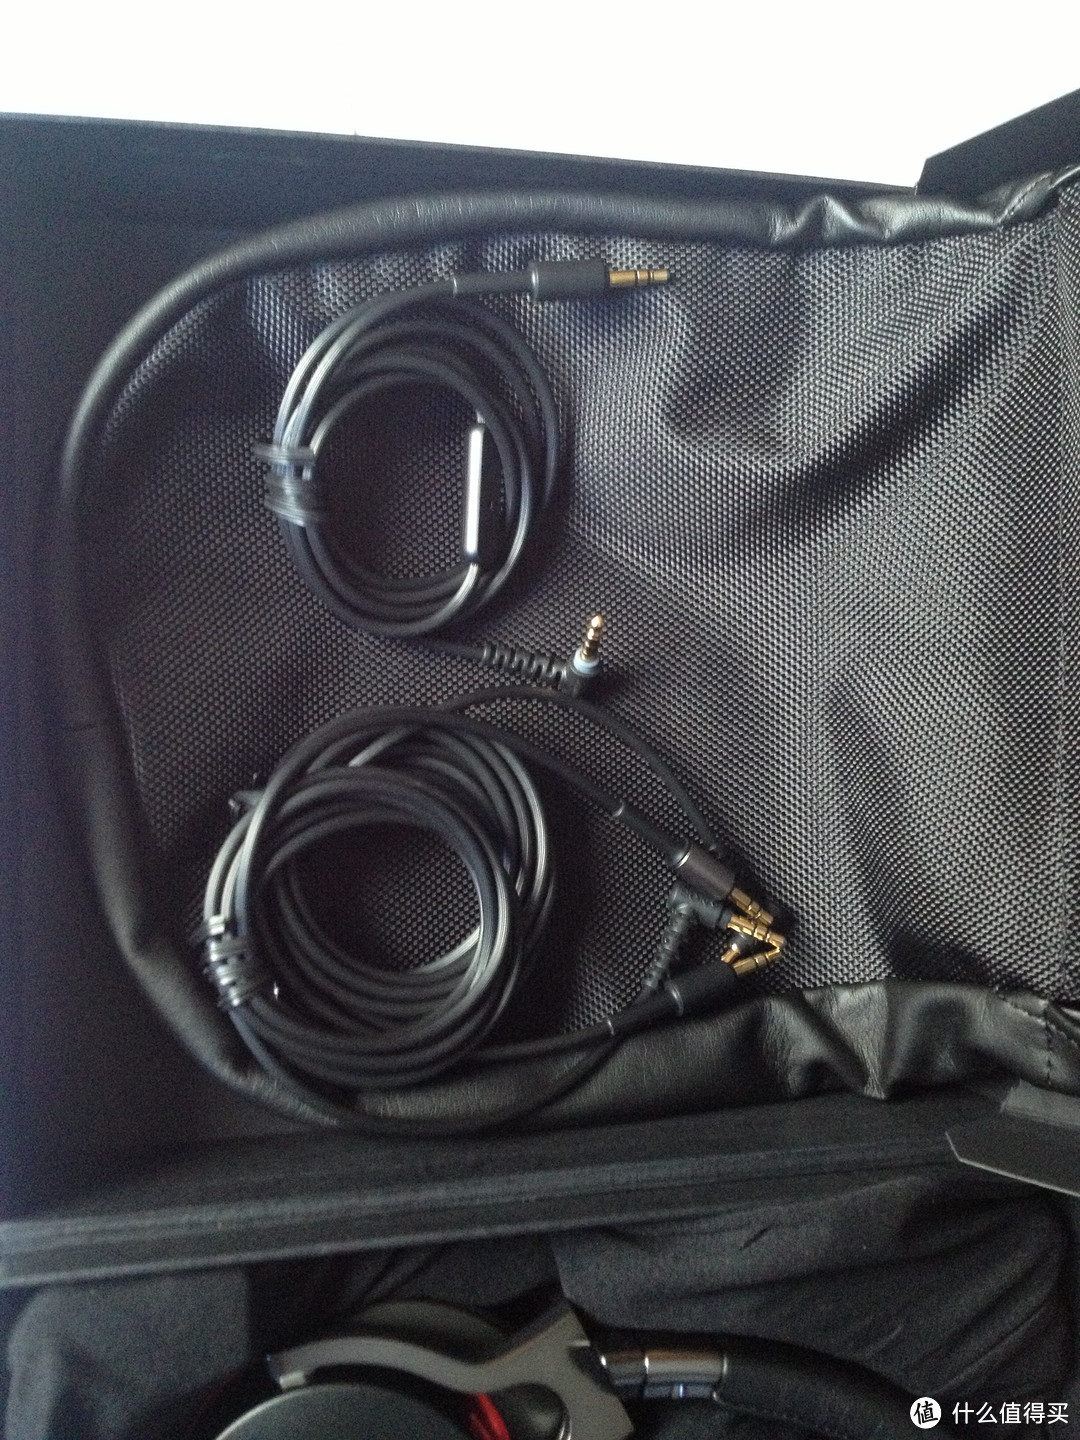 SONY 索尼 MDR-1R MK2 Hi-Res 高解析音质系列头戴式耳机